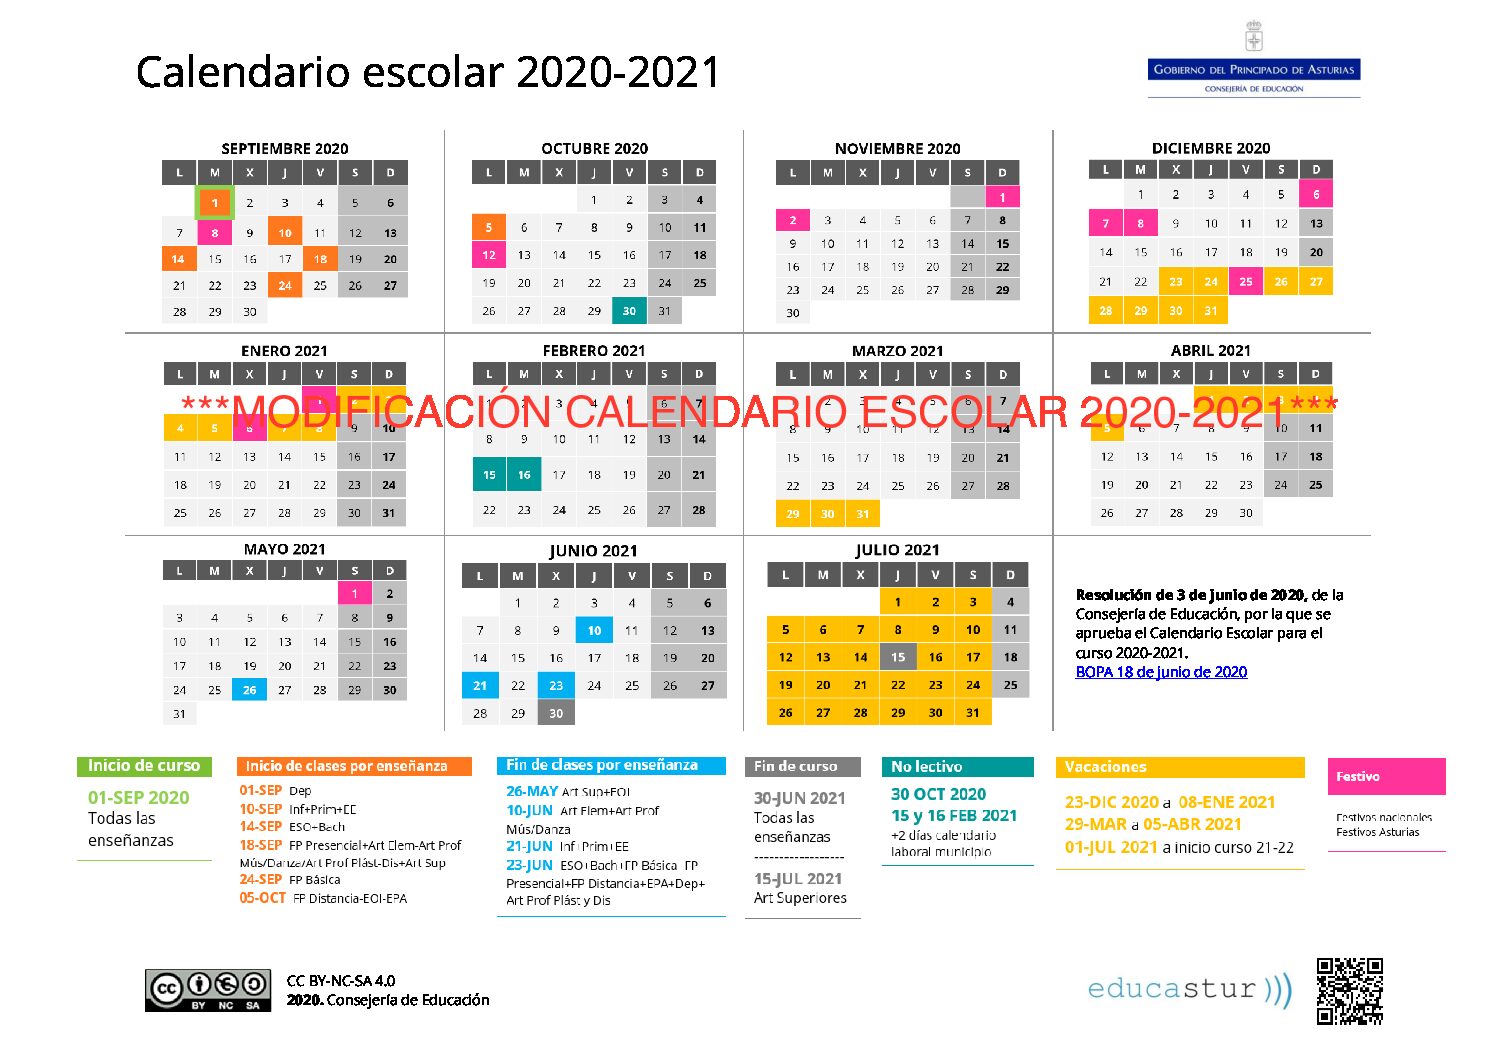 ***IMPORTANTE*** Se modifica el calendario escolar 2020-2021